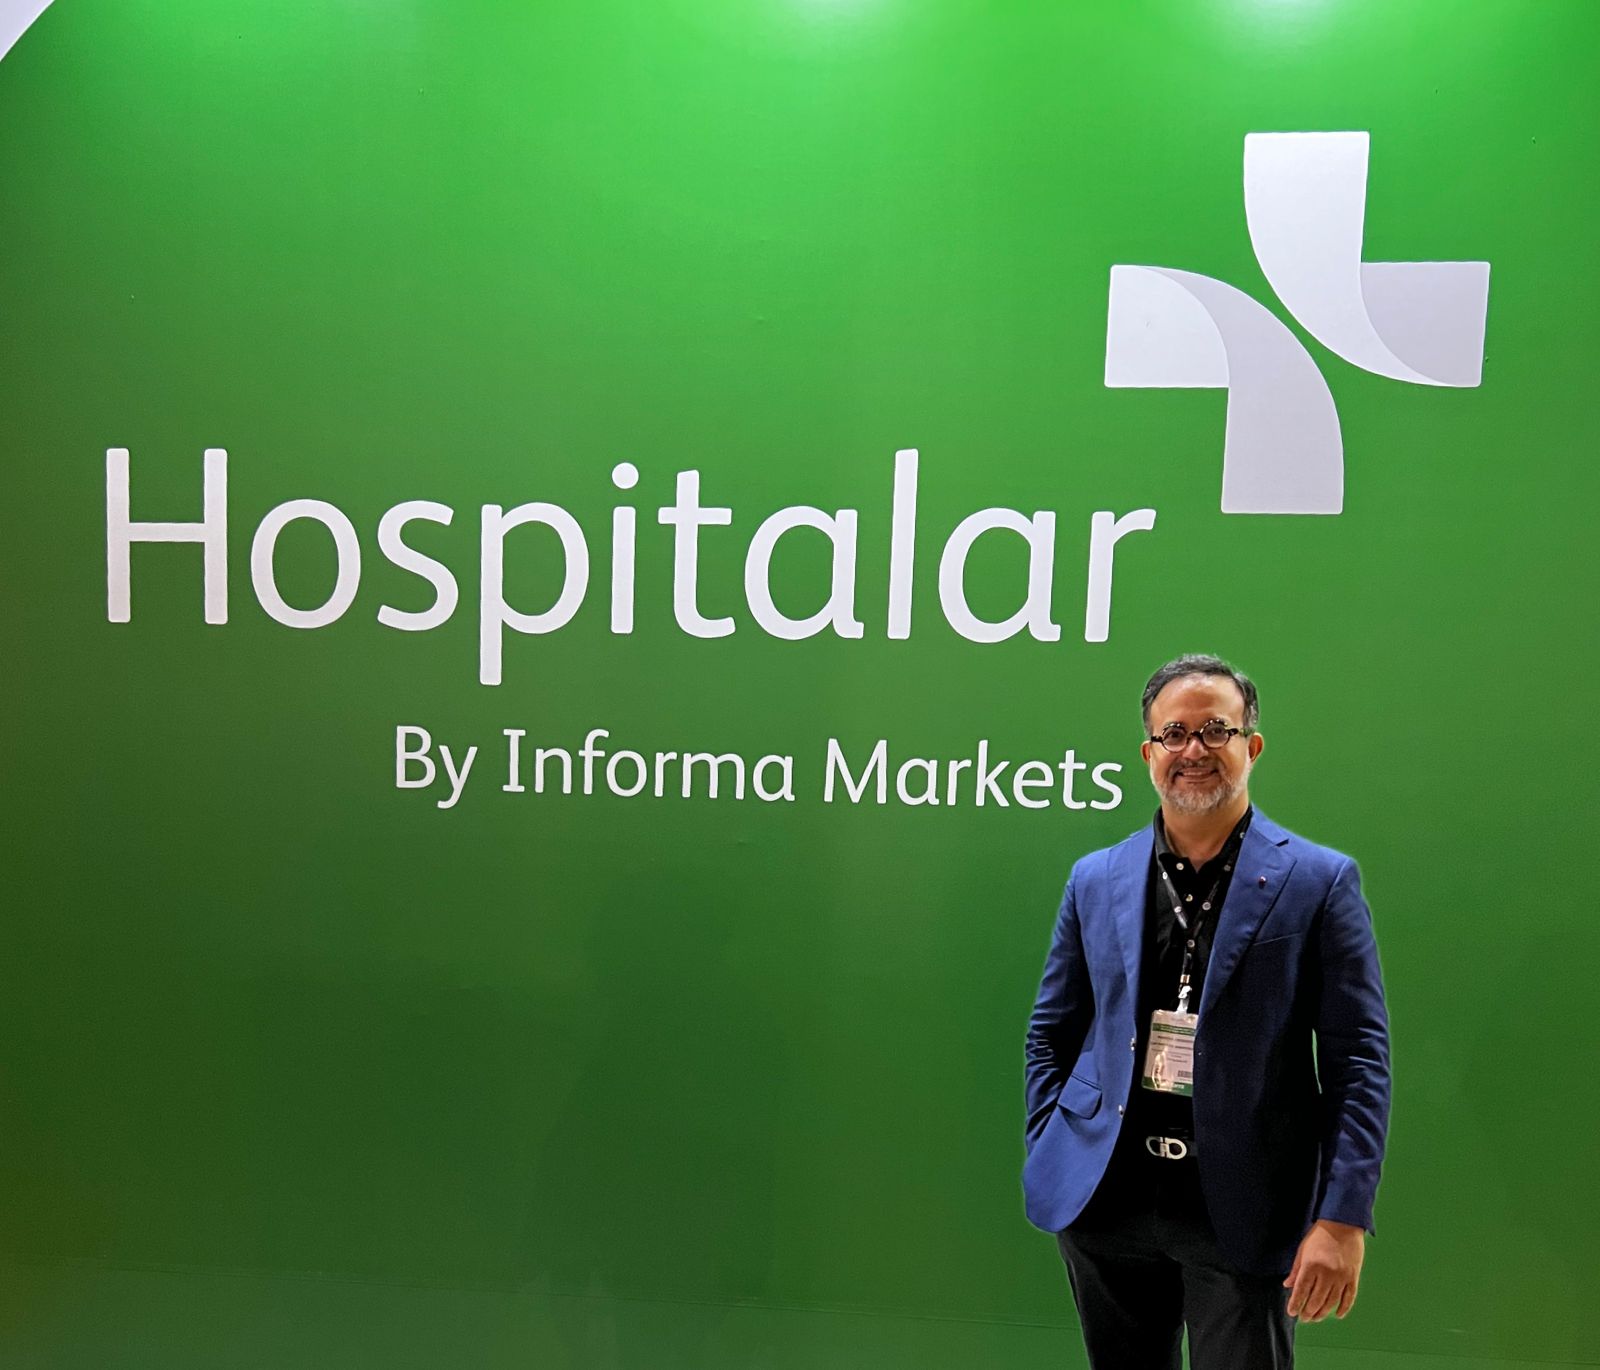 Dr. Márcio Crisóstomo participa da Feira Hospitalar, em São Paulo, e traz novidades tecnológicas ao Instituto Crisóstomo